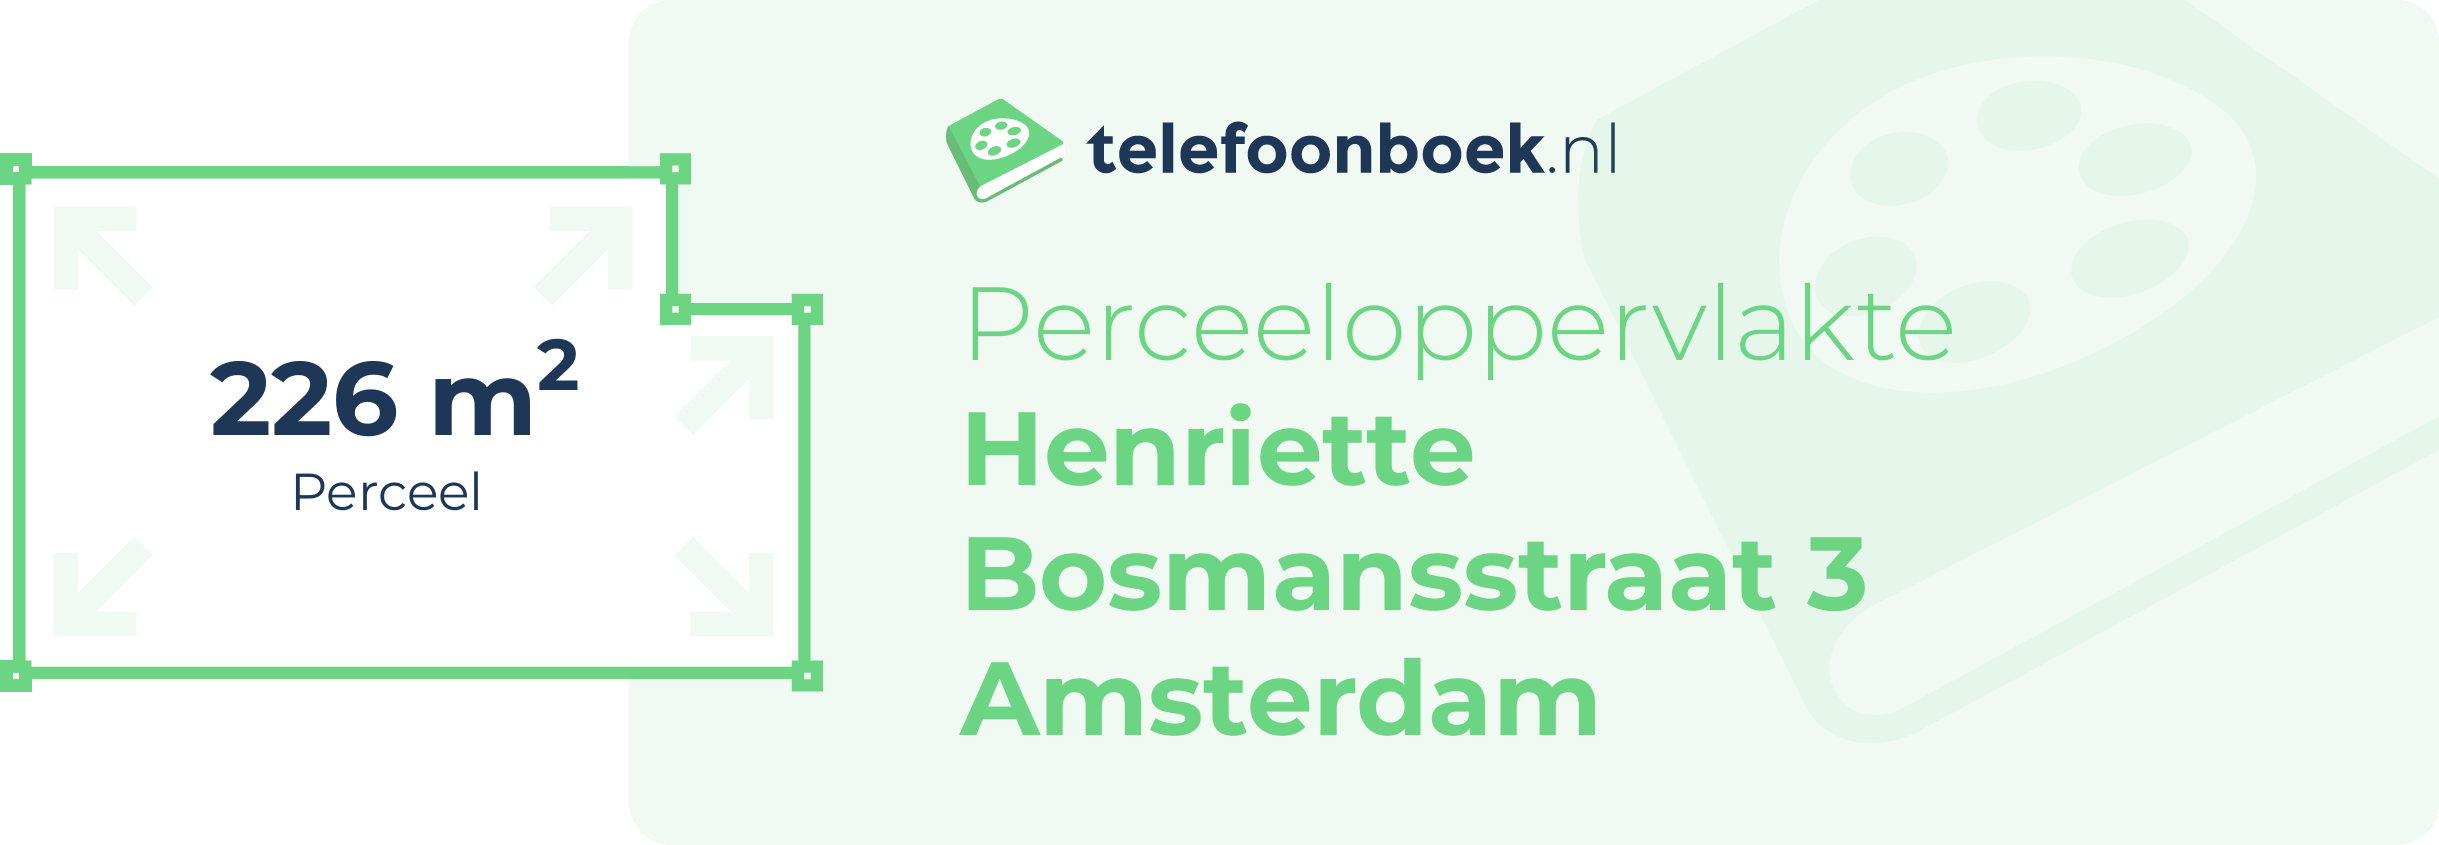 Perceeloppervlakte Henriette Bosmansstraat 3 Amsterdam